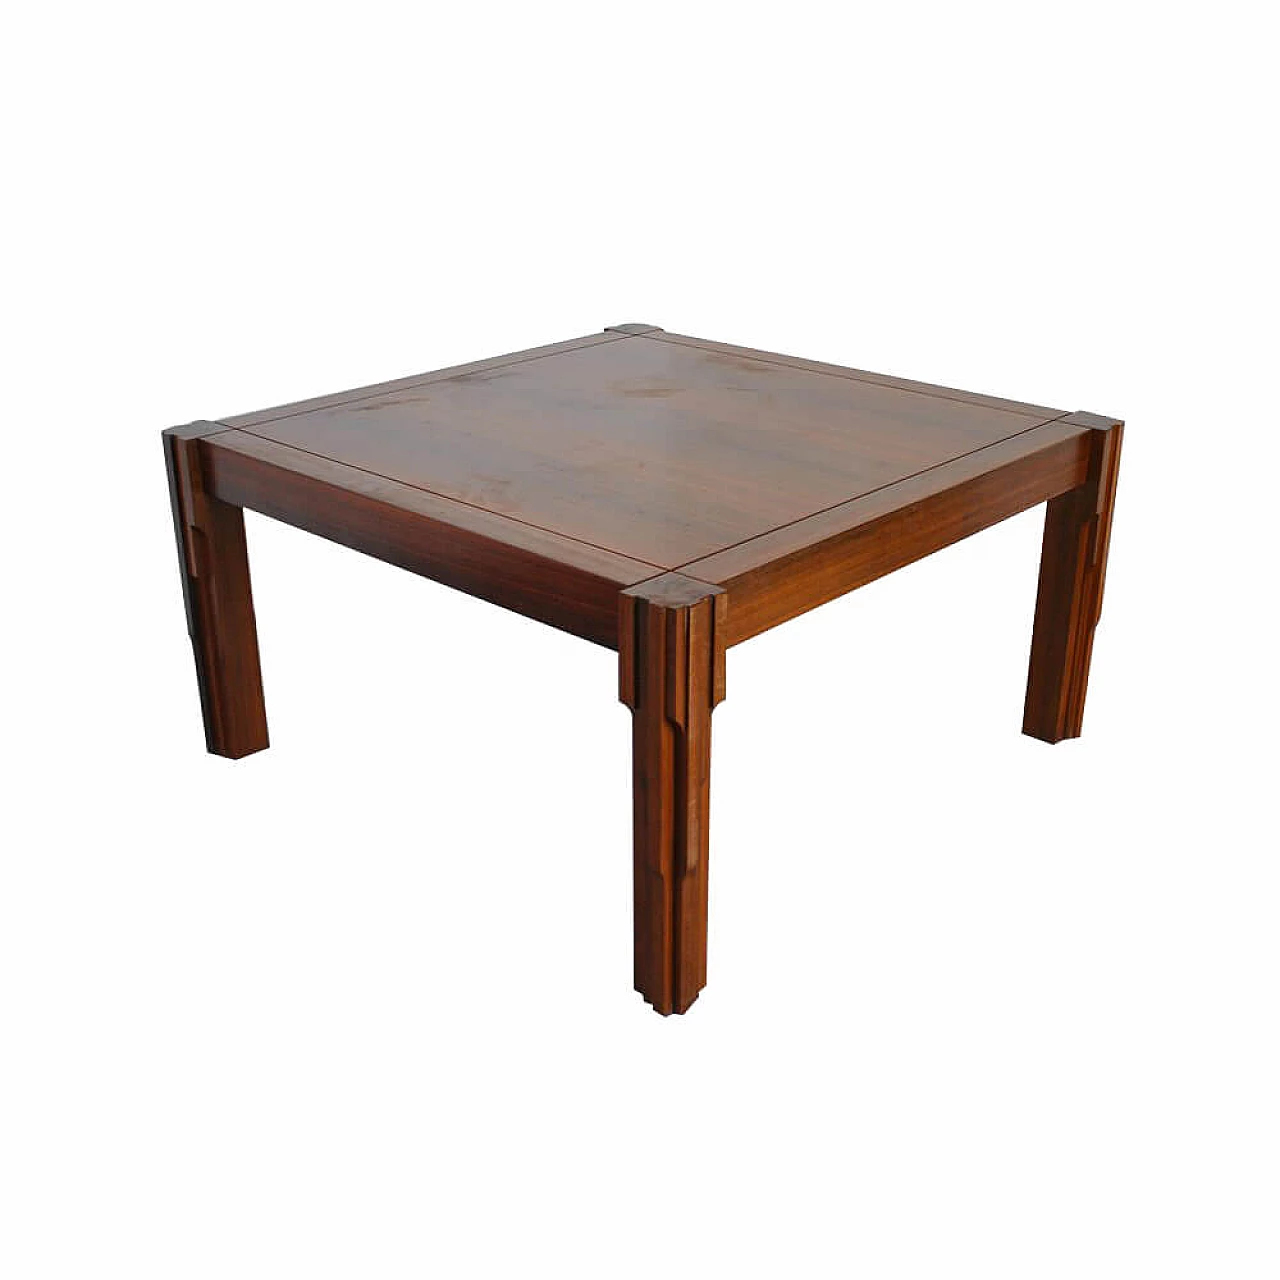 Square table in walnut by Luciano Frigerio for Frigerio di Desio, 70s 1305600